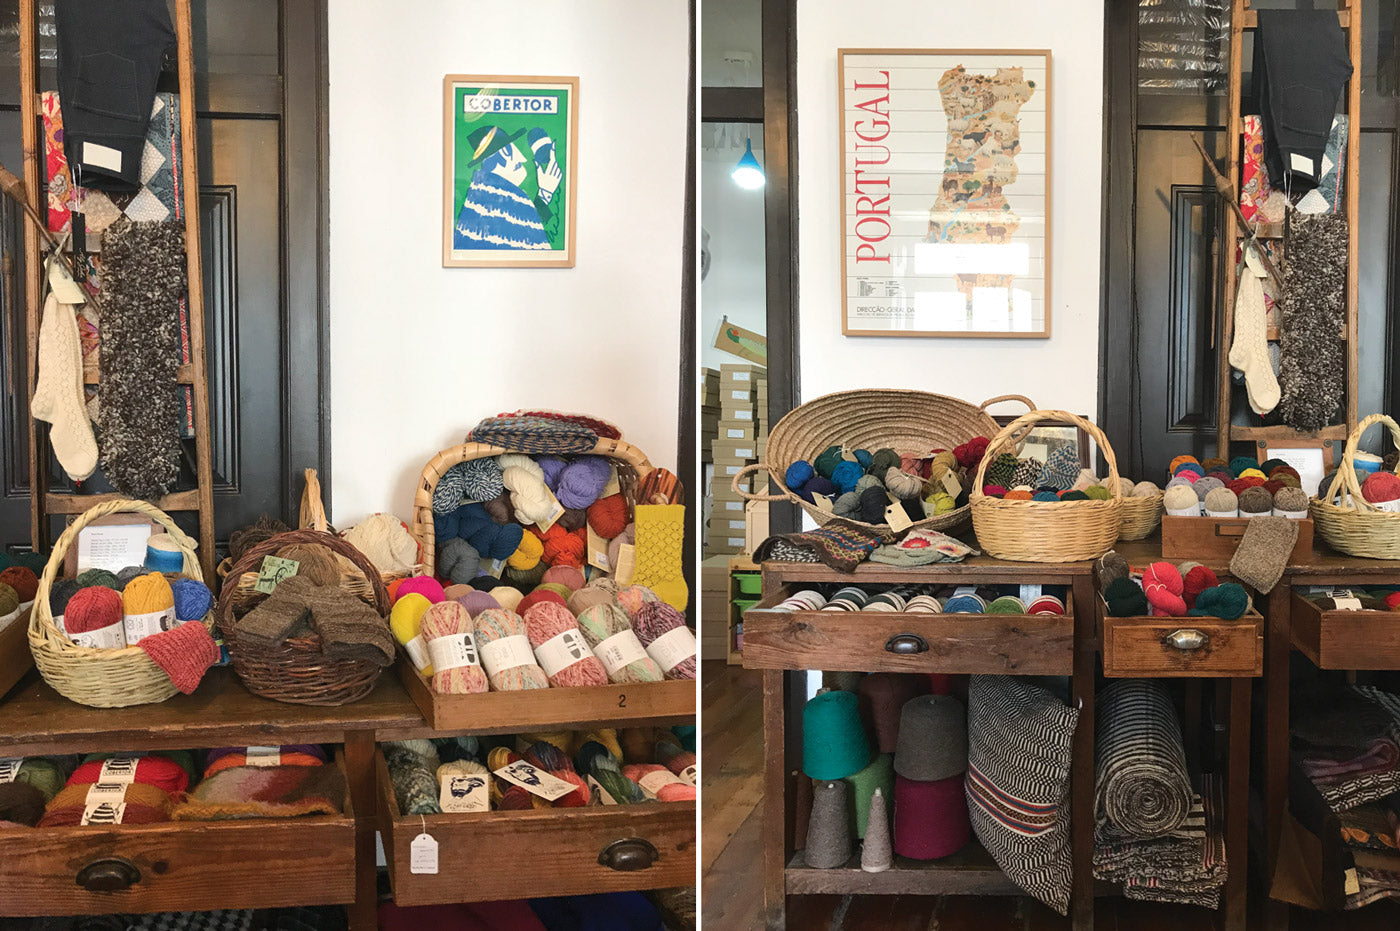 Knitting Notions  Local yarn shop, Tiger crafts, Knitting kits